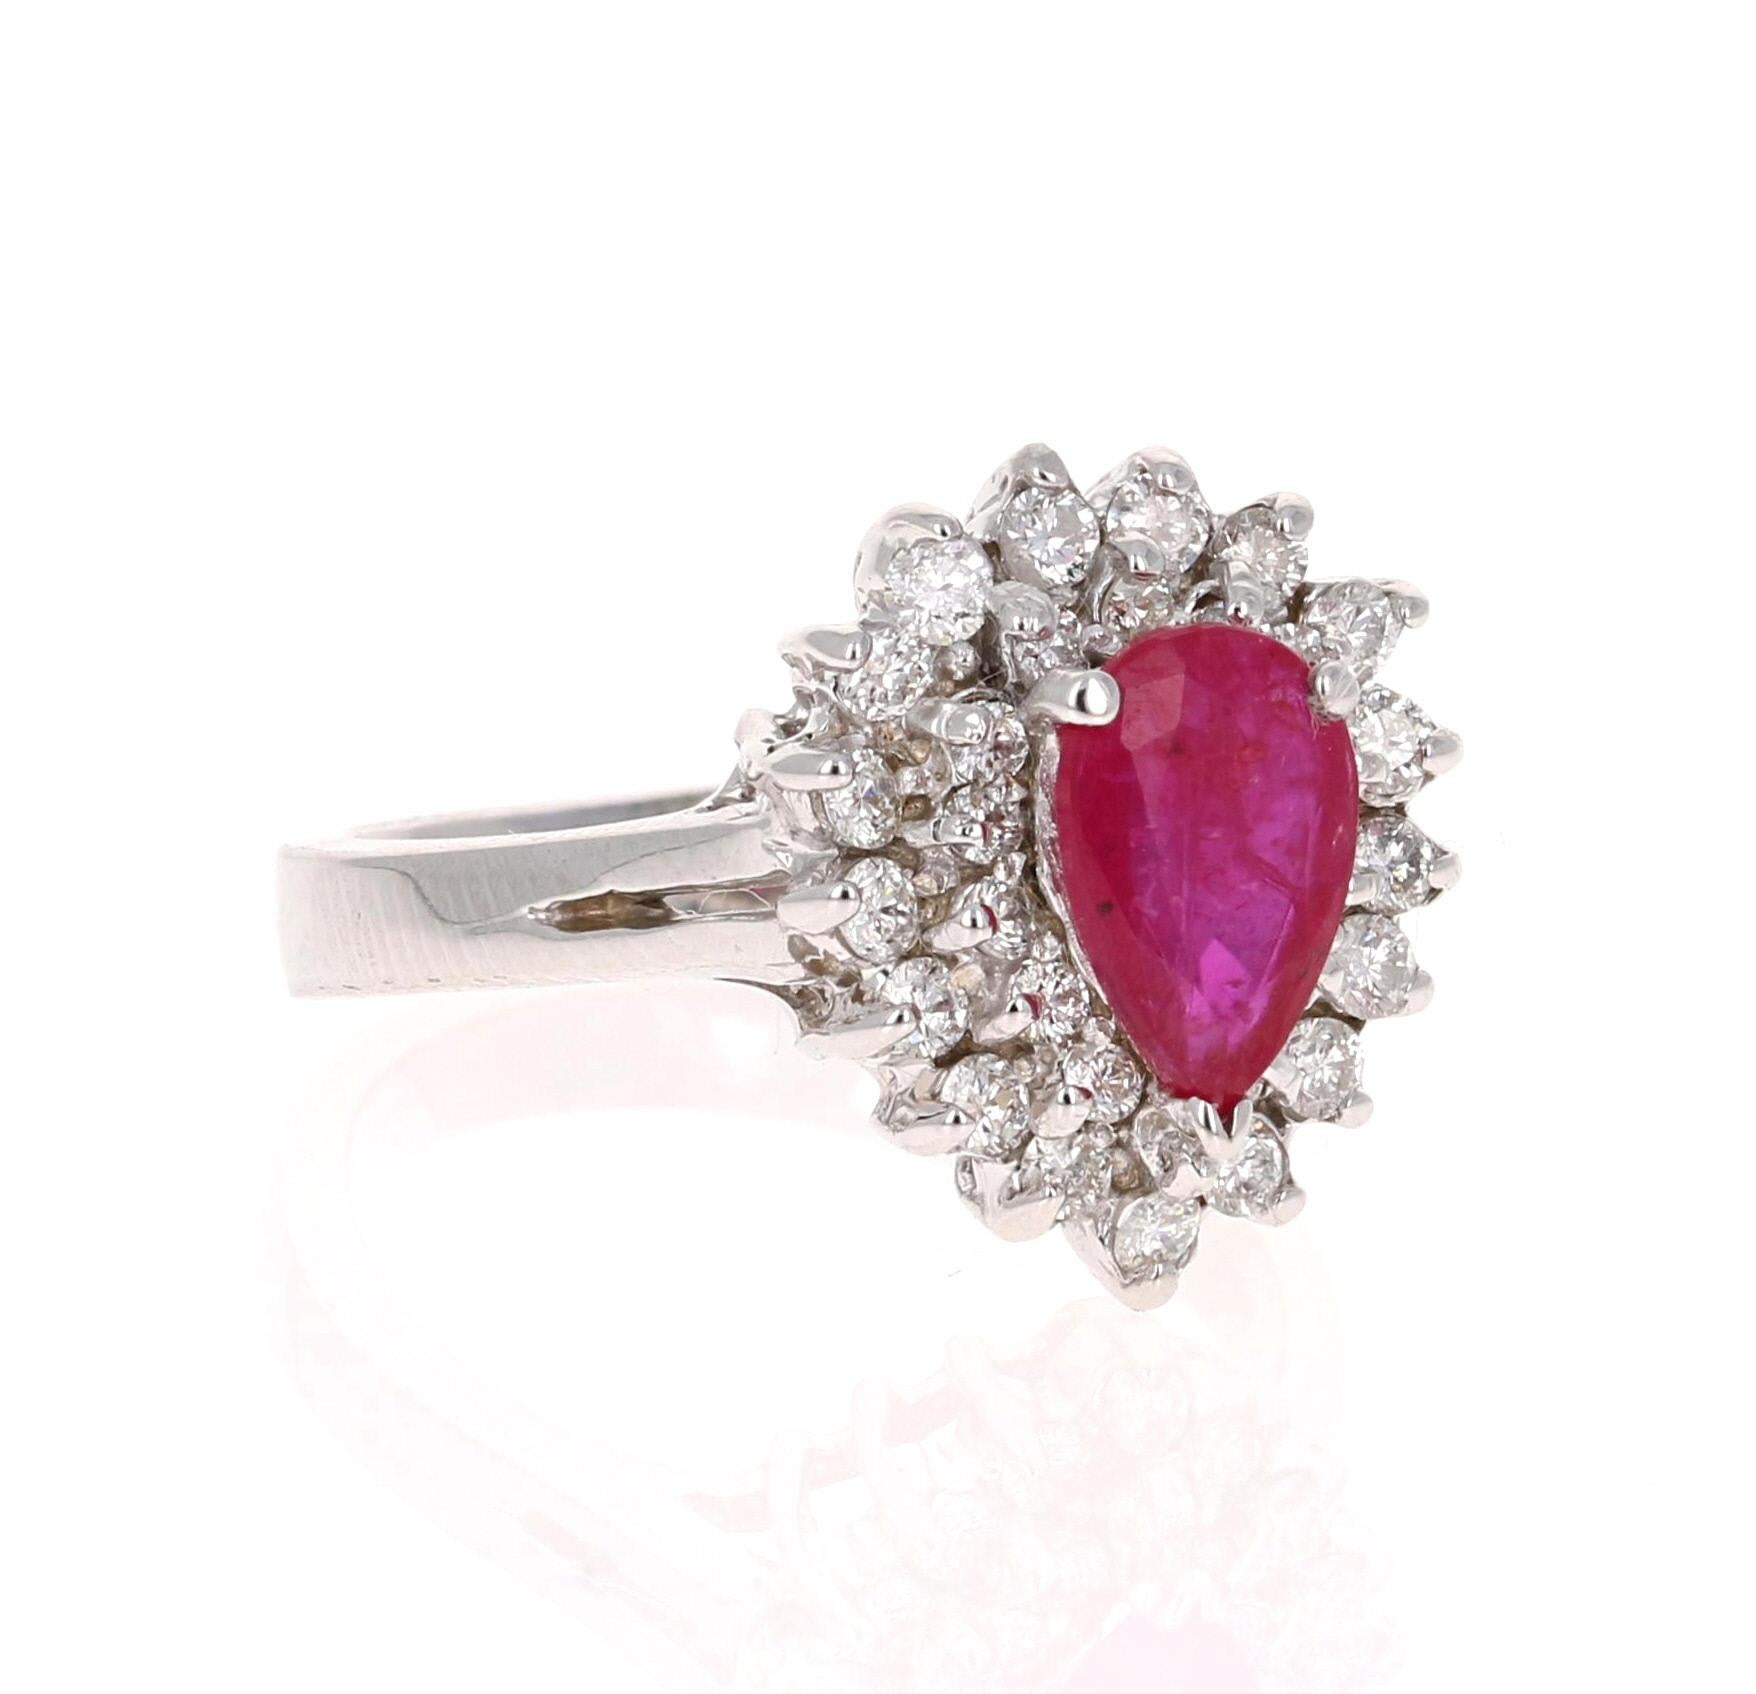 2.03 Carat Ruby Diamond 14 Karat White Gold Engagement Ring For Sale at ...